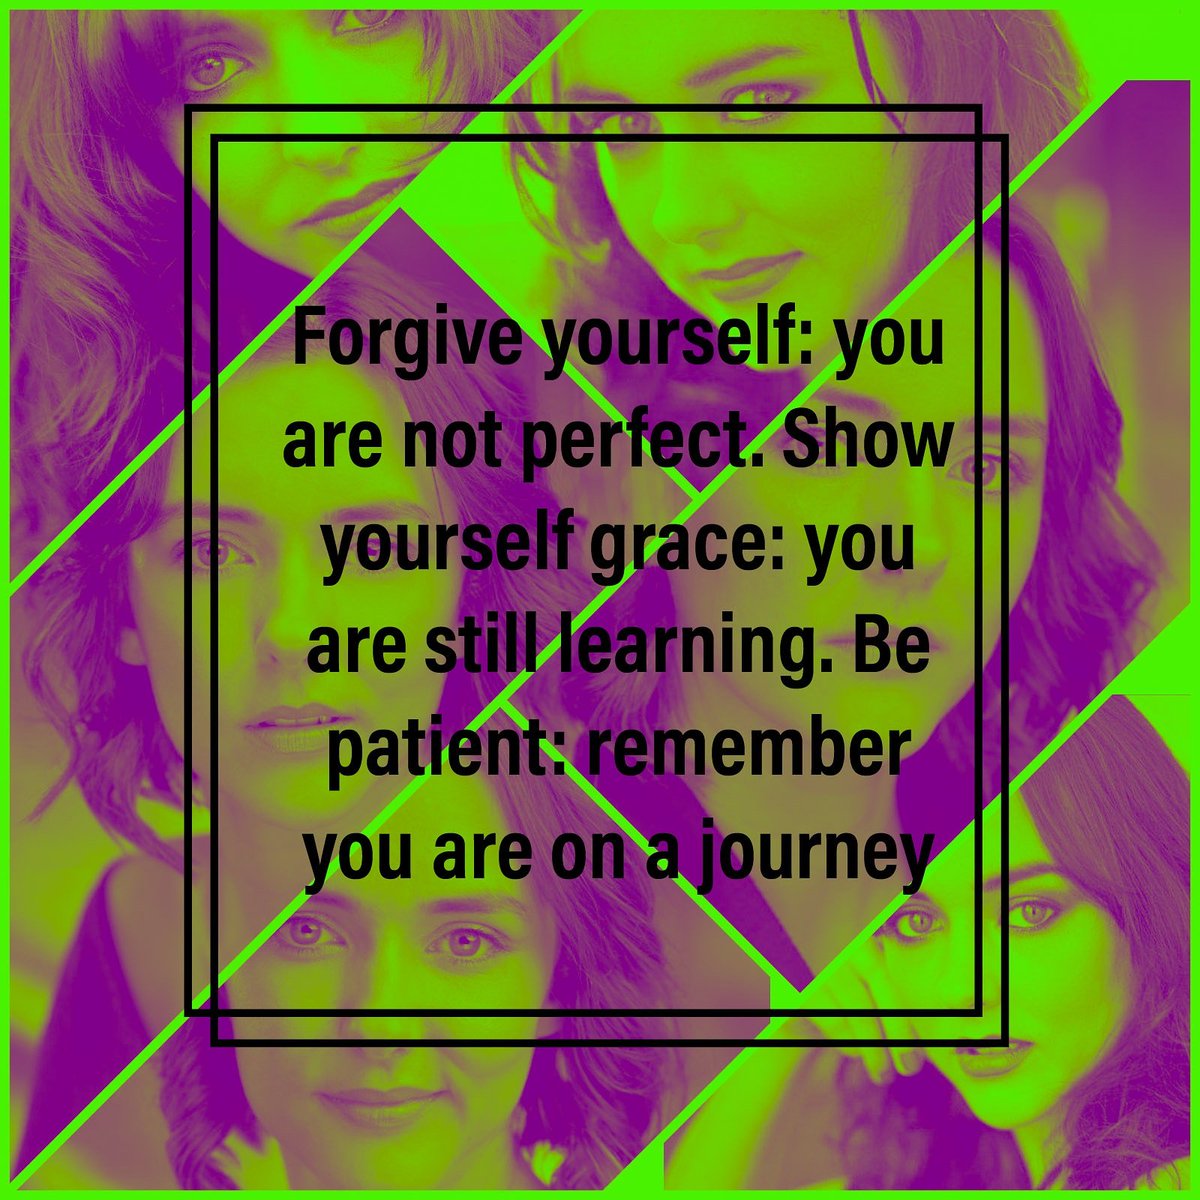 #bepatient #forgiveyourself #stilllearning #grace #keepgoing #lifeschallenges #yourjourney #actorsdream